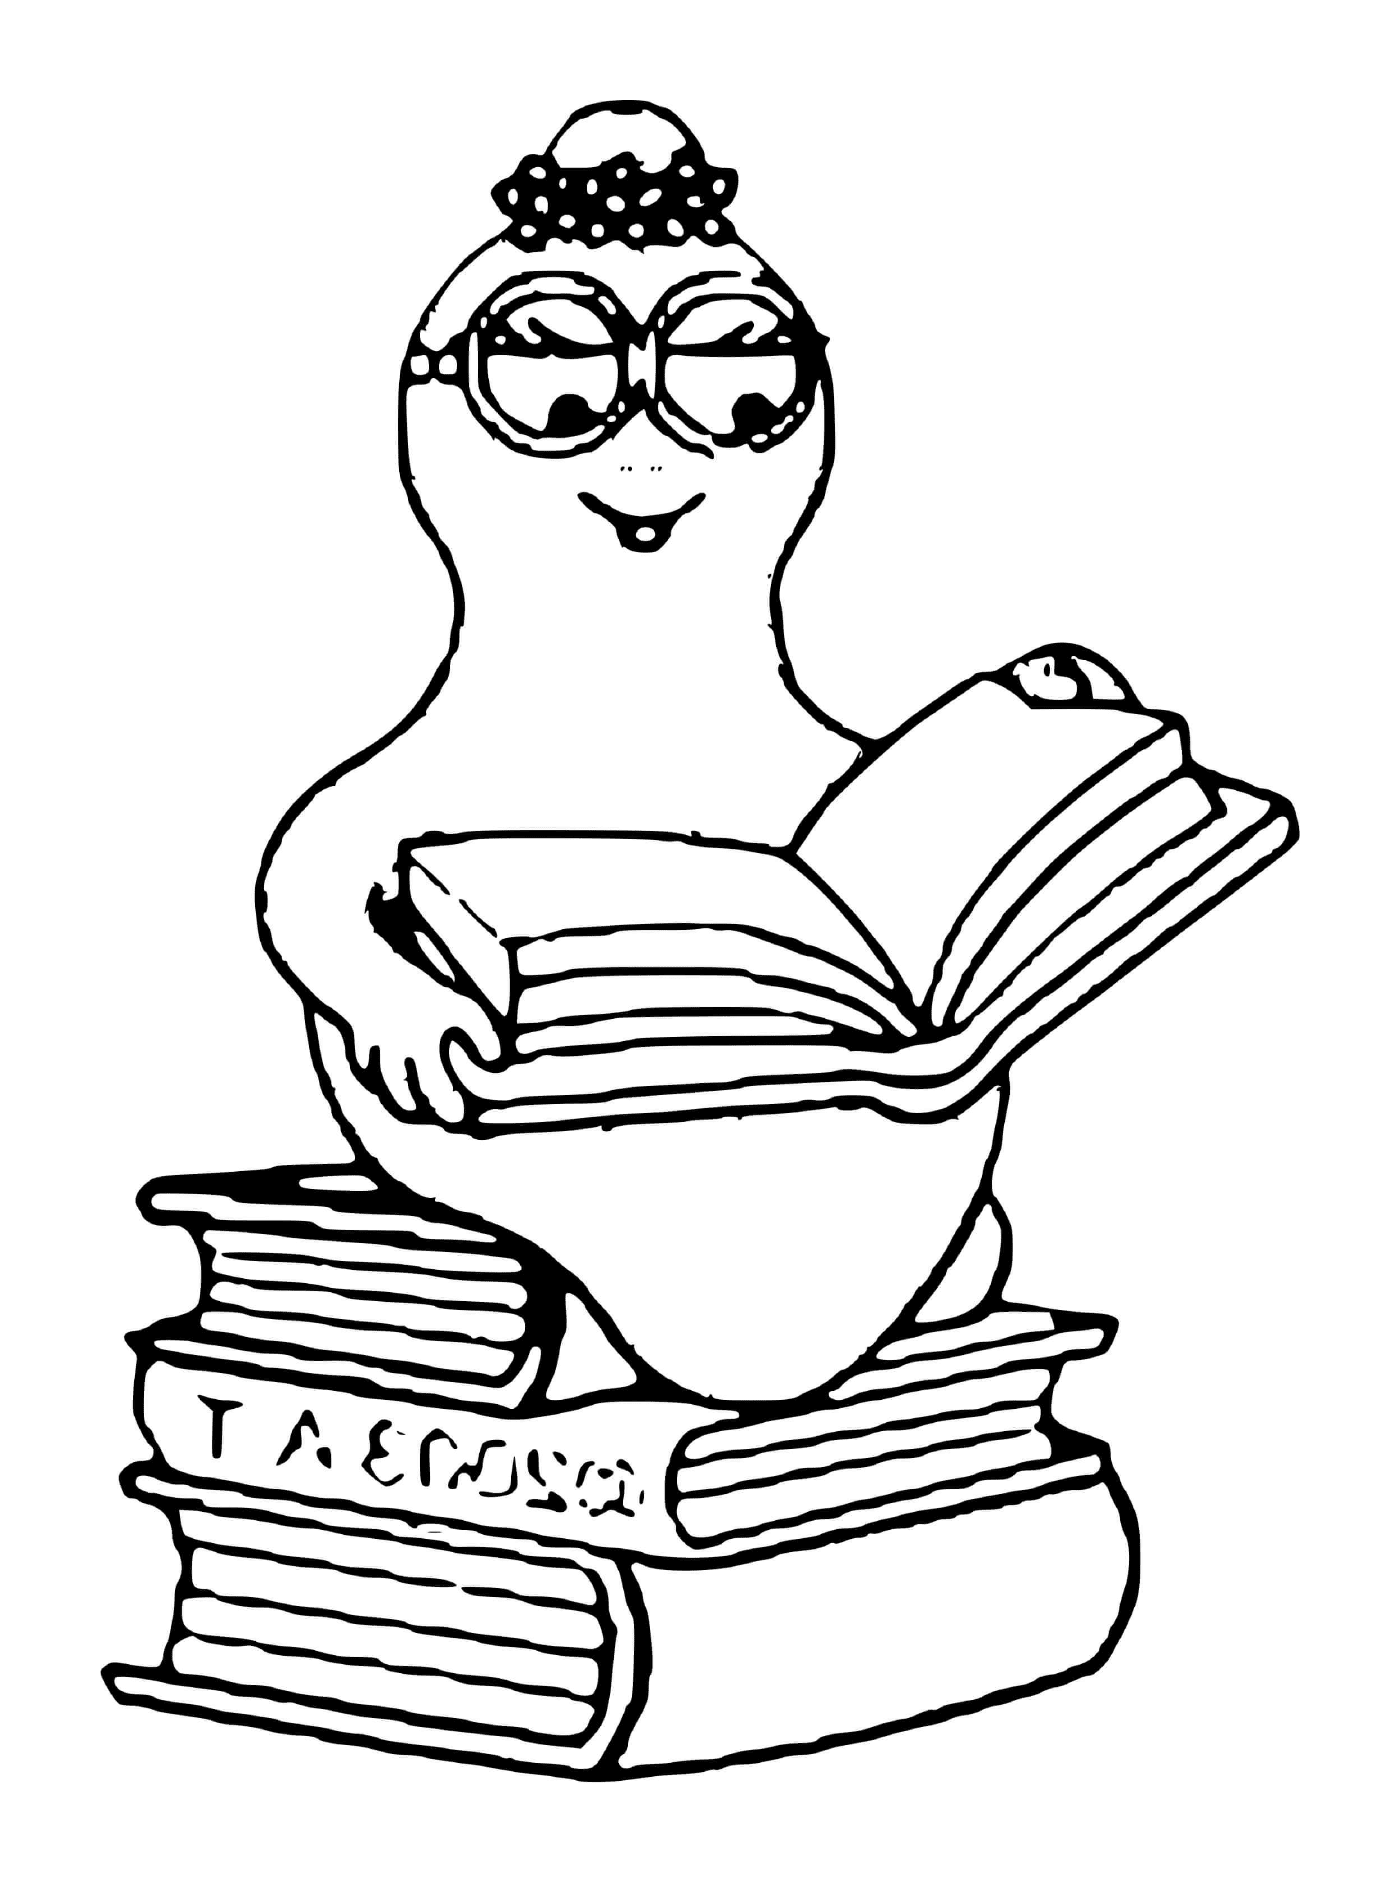  Uma pessoa sentada em uma pilha de livros 